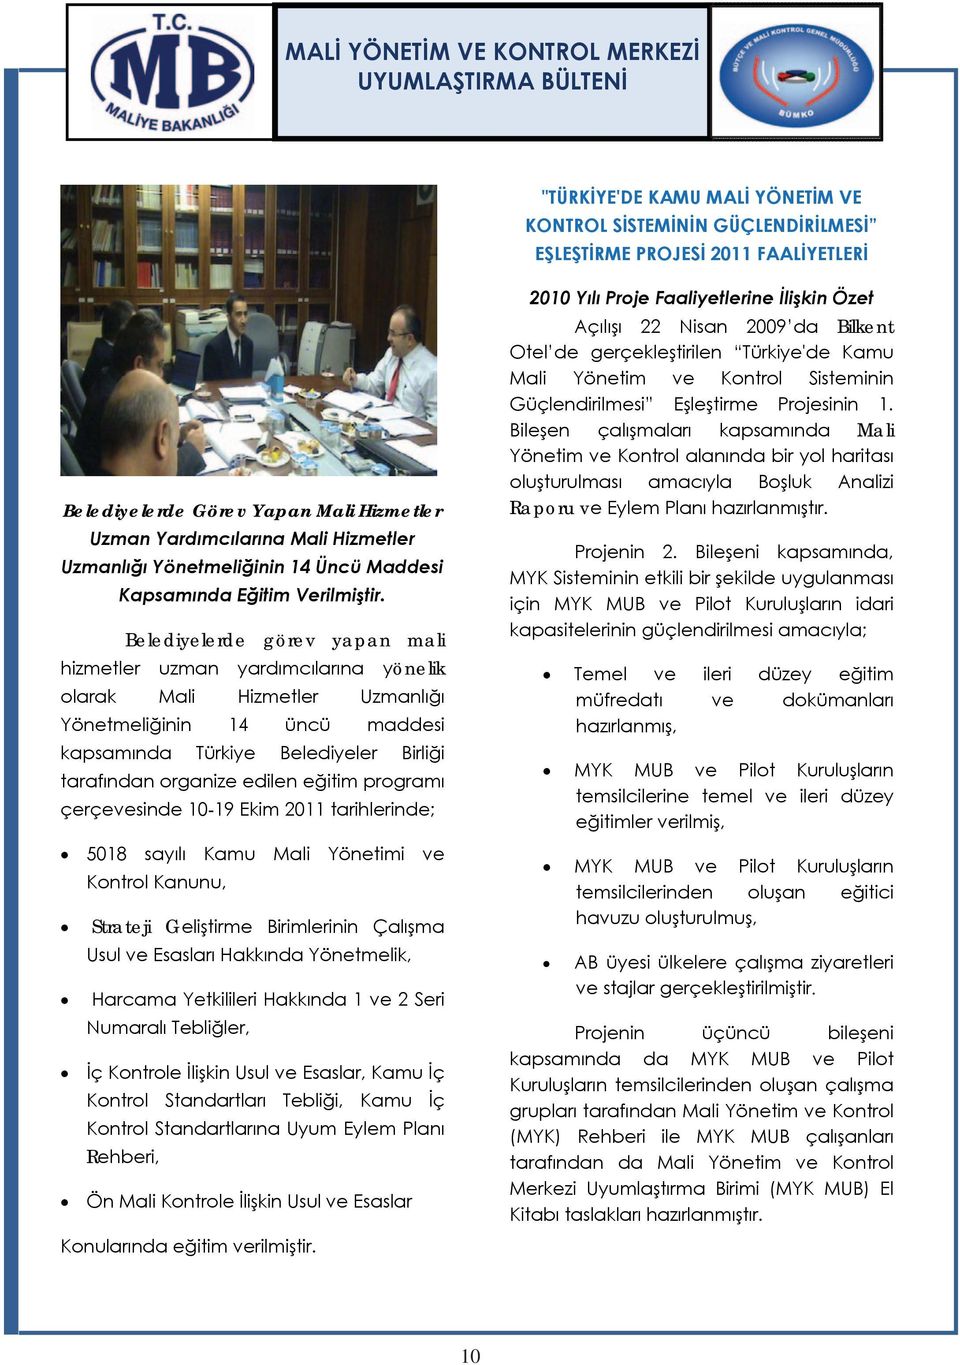 Belediyelerde görev yapan mali hizmetler uzman yardımcılarına yönelik olarak Mali Hizmetler Uzmanlığı Yönetmeliğinin 14 üncü maddesi kapsamında Türkiye Belediyeler Birliği tarafından organize edilen